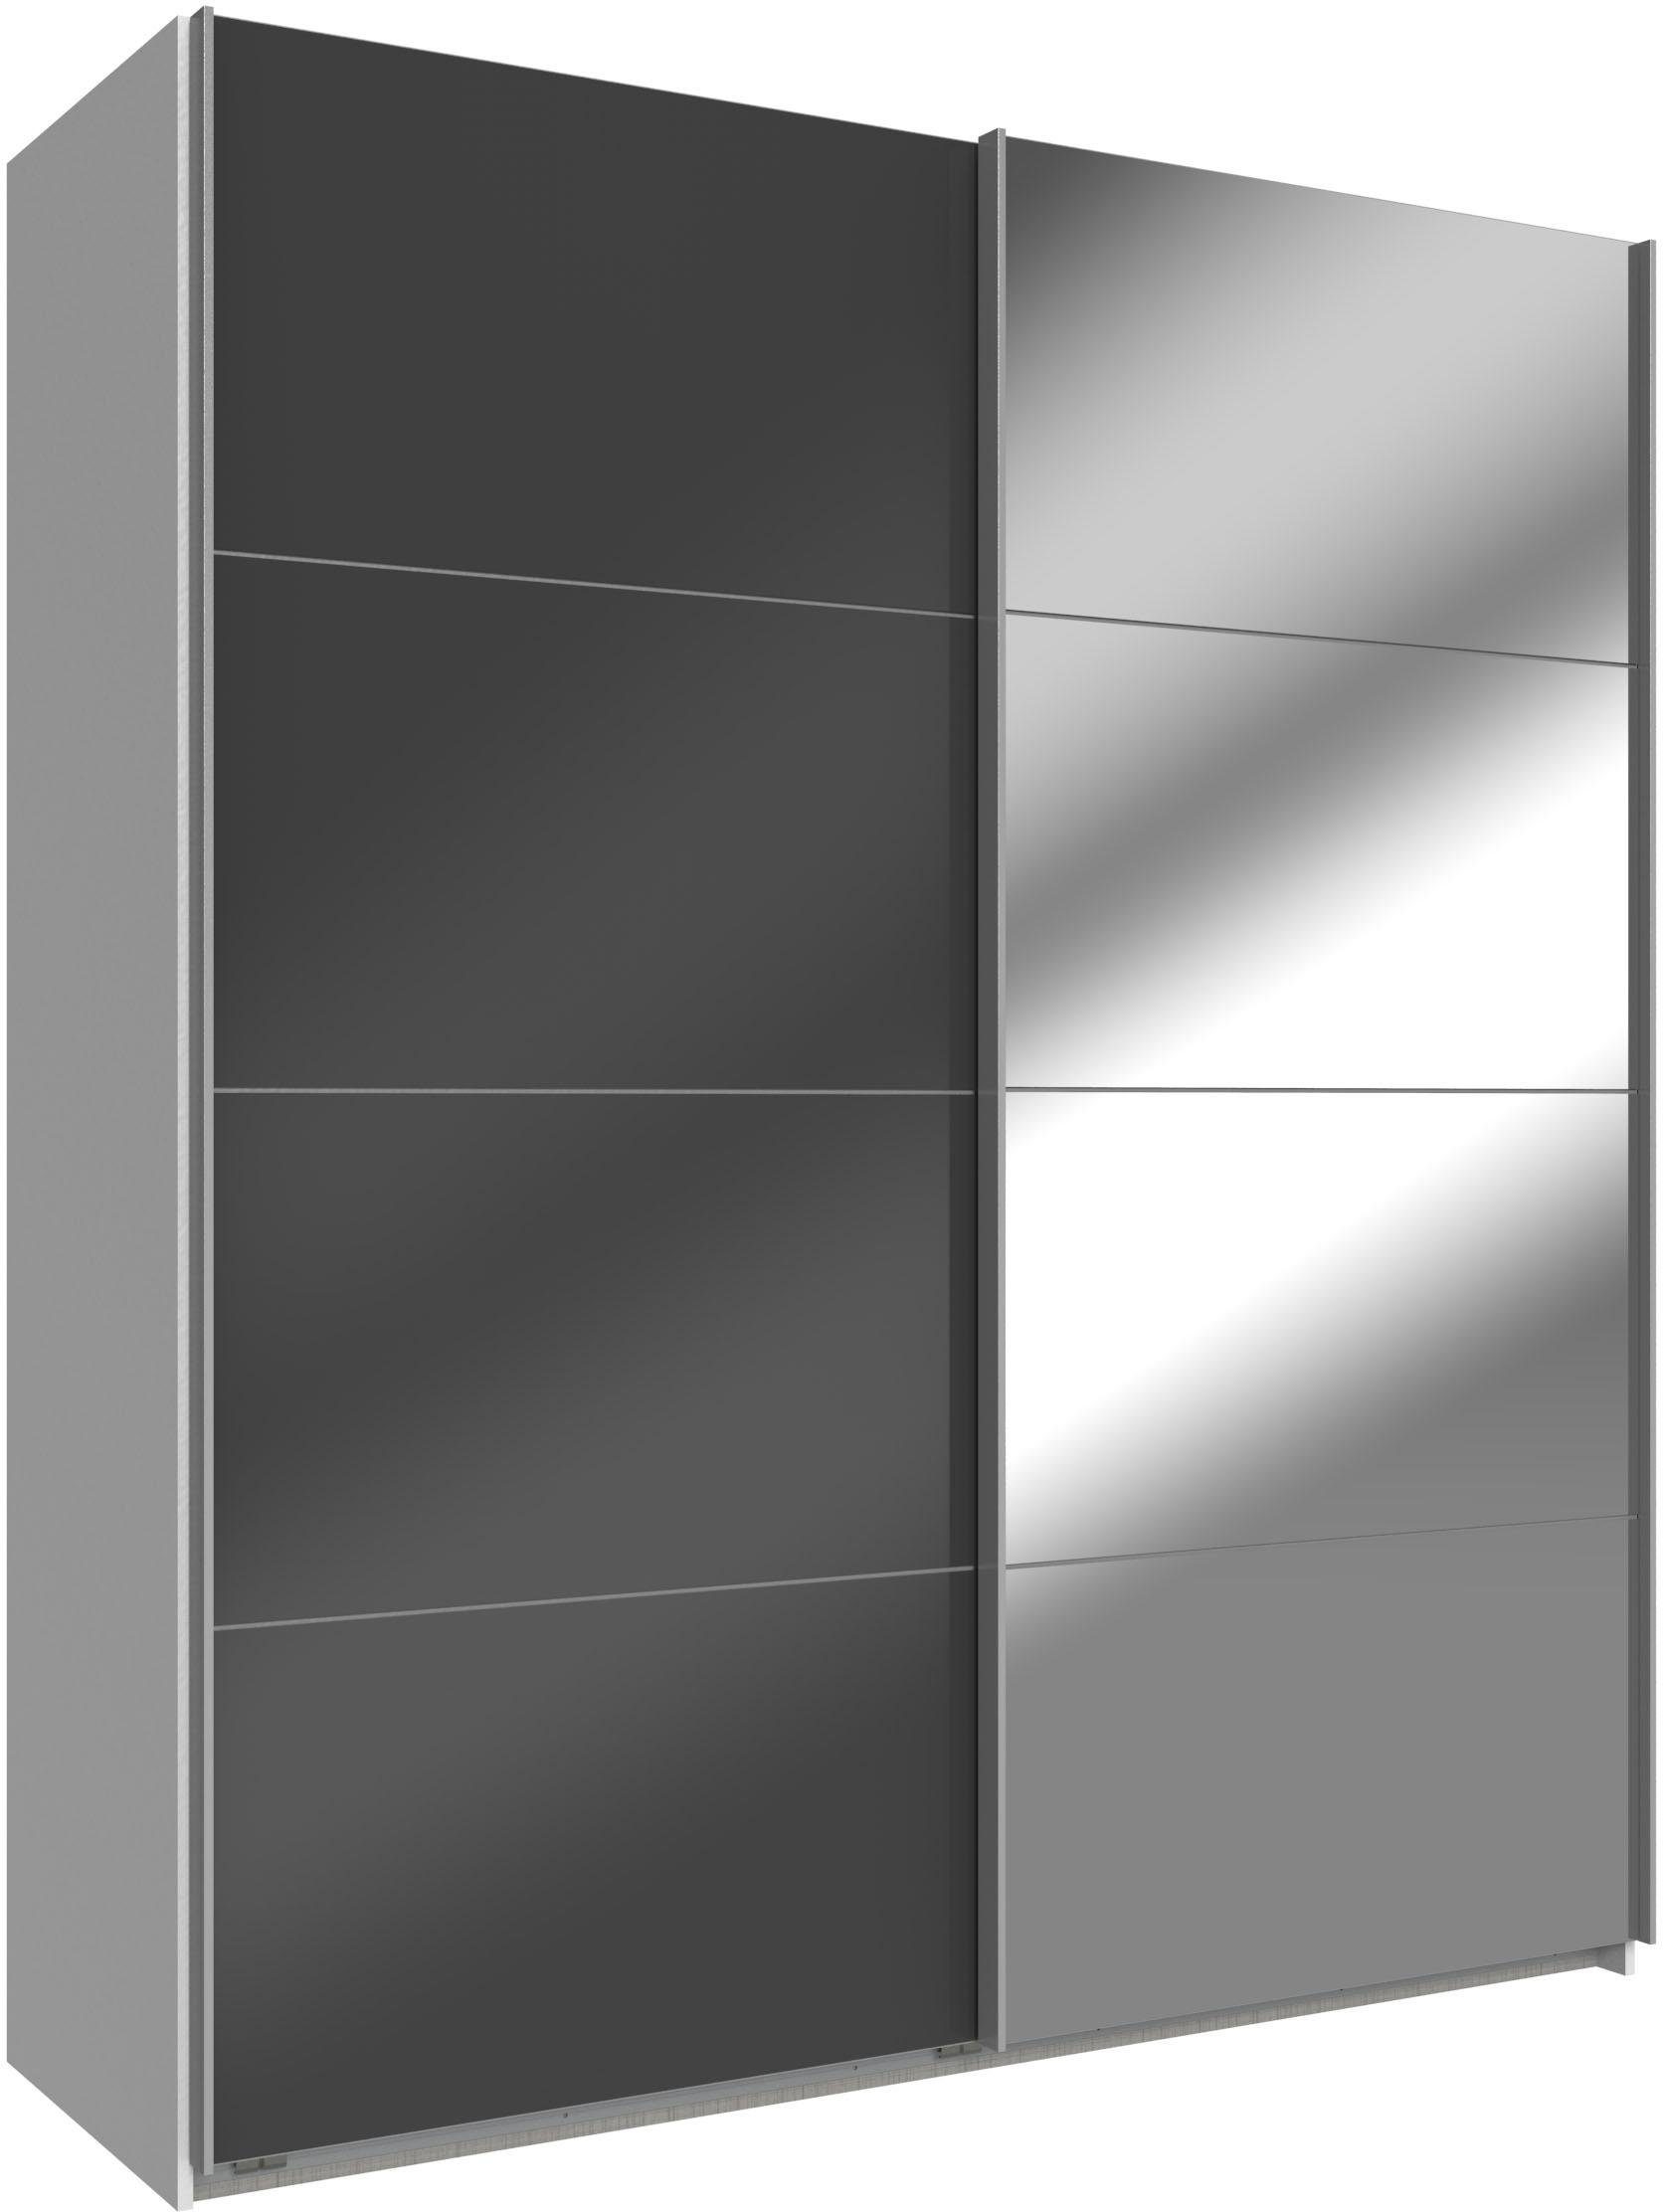 Spiegel Schwebetürenschrank und Wimex Glas Easy mit weiß, Grauglas/Spiegel